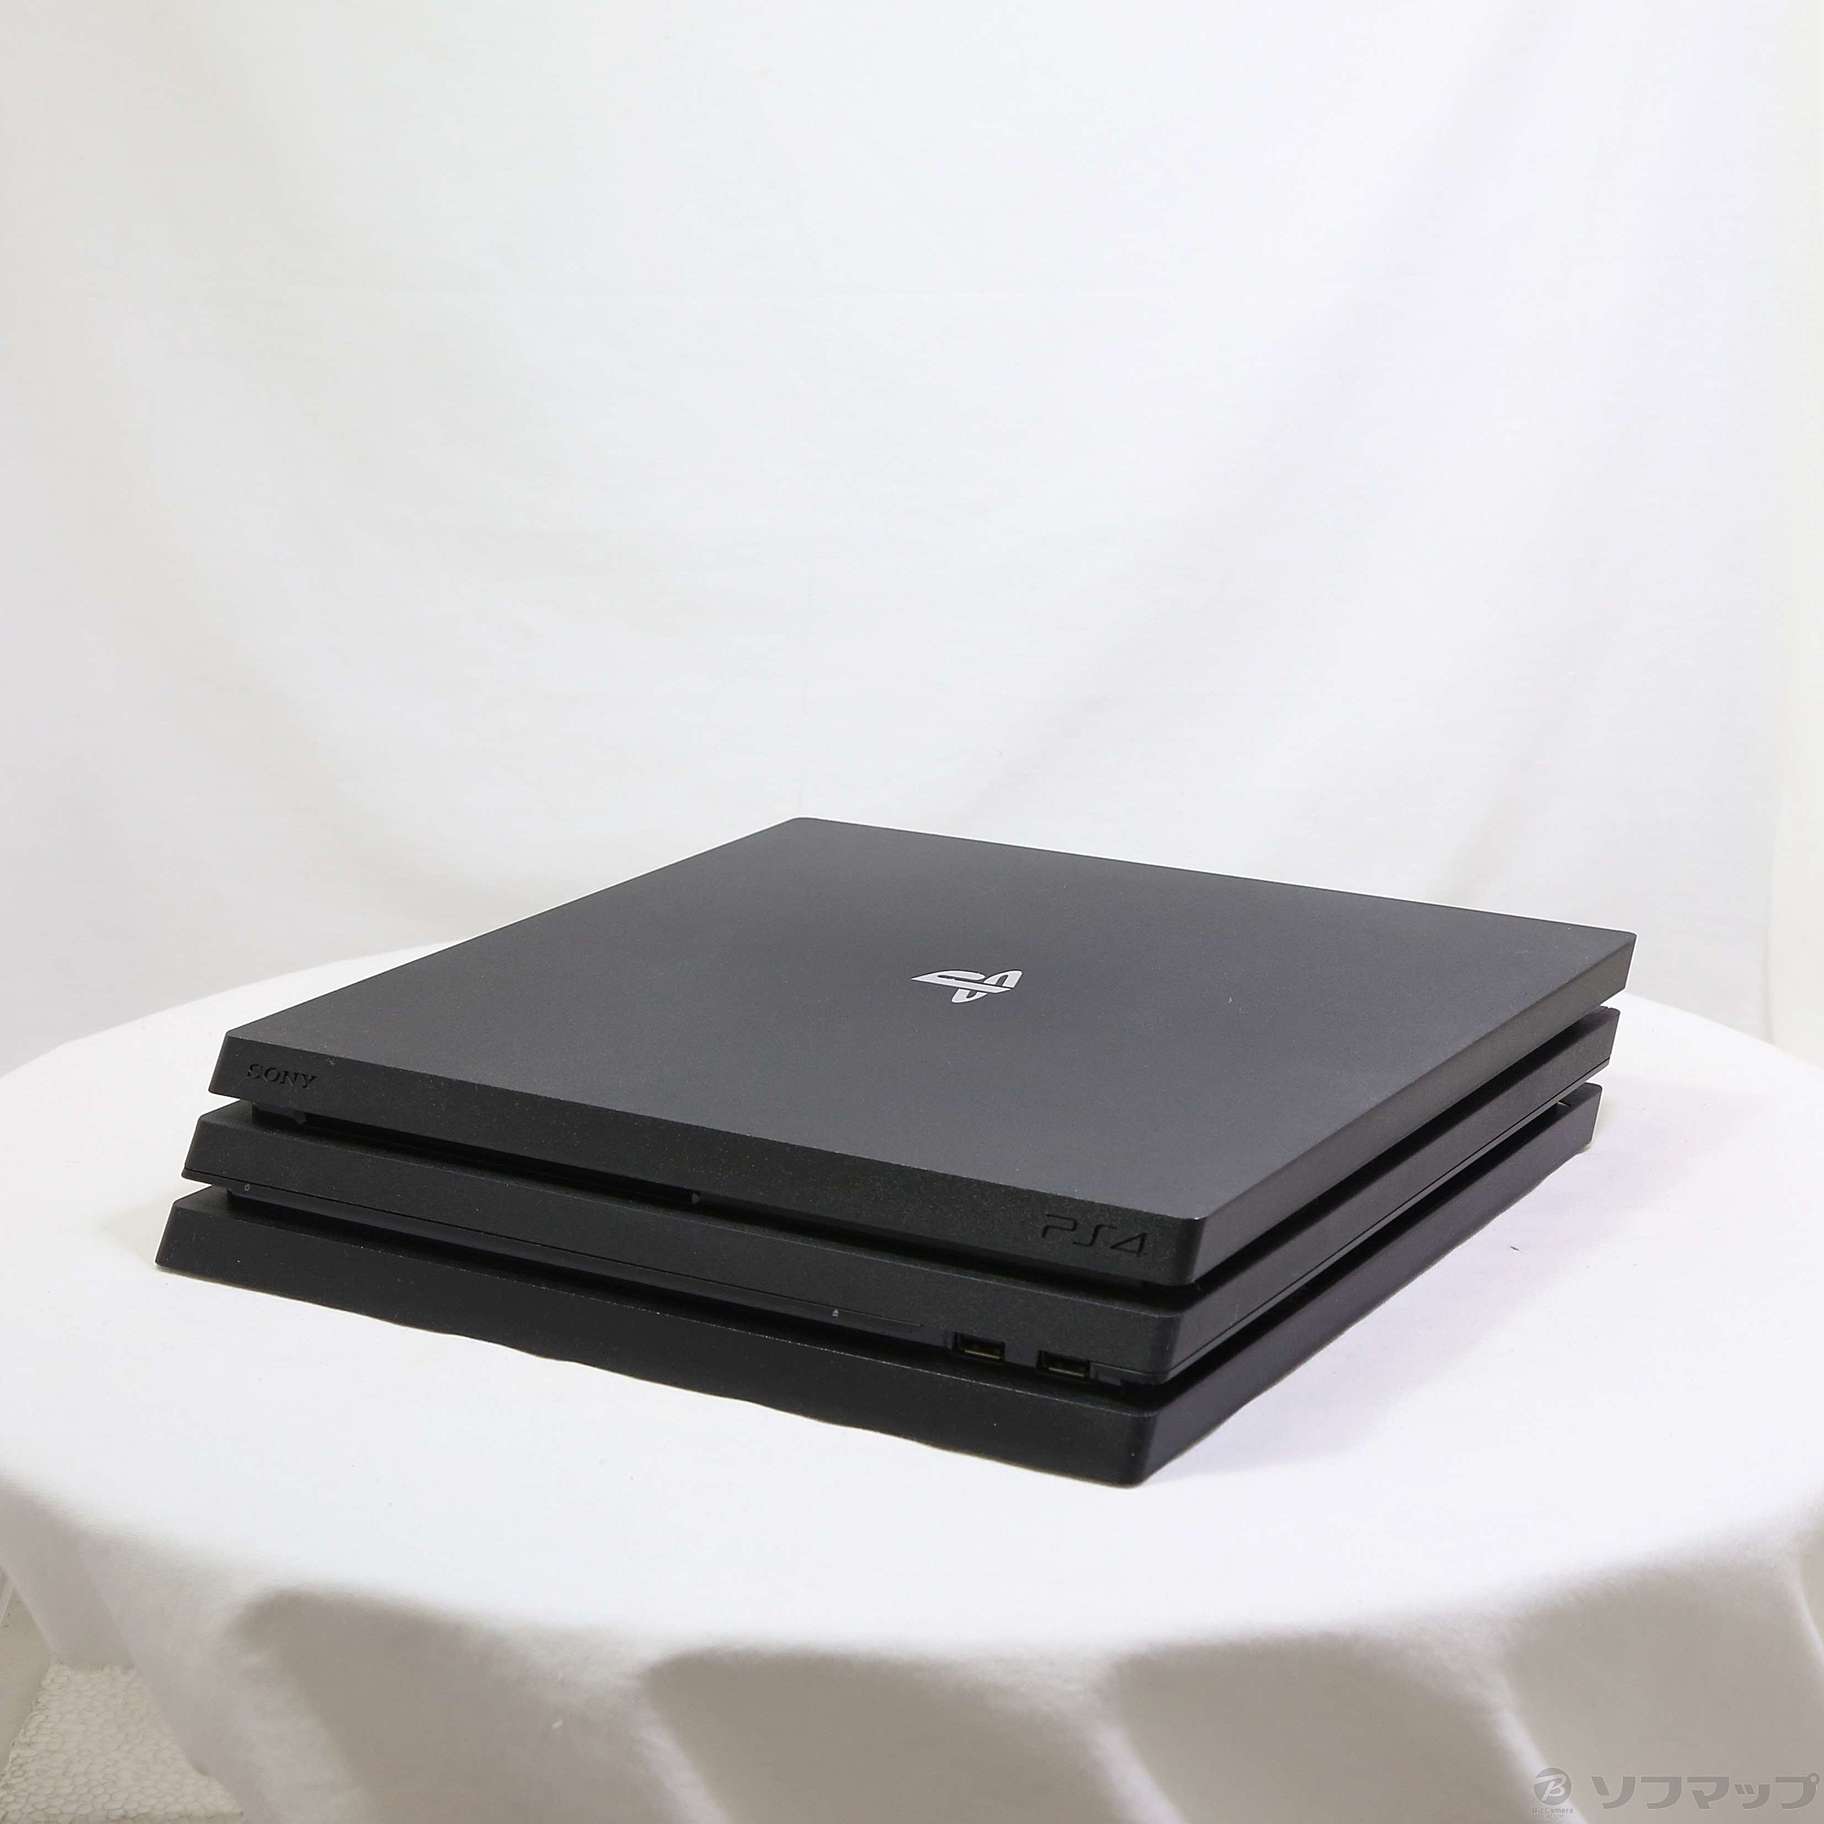 PlayStation Pro ジェット・ブラック 2TB (CUH-7200CB01) - 3